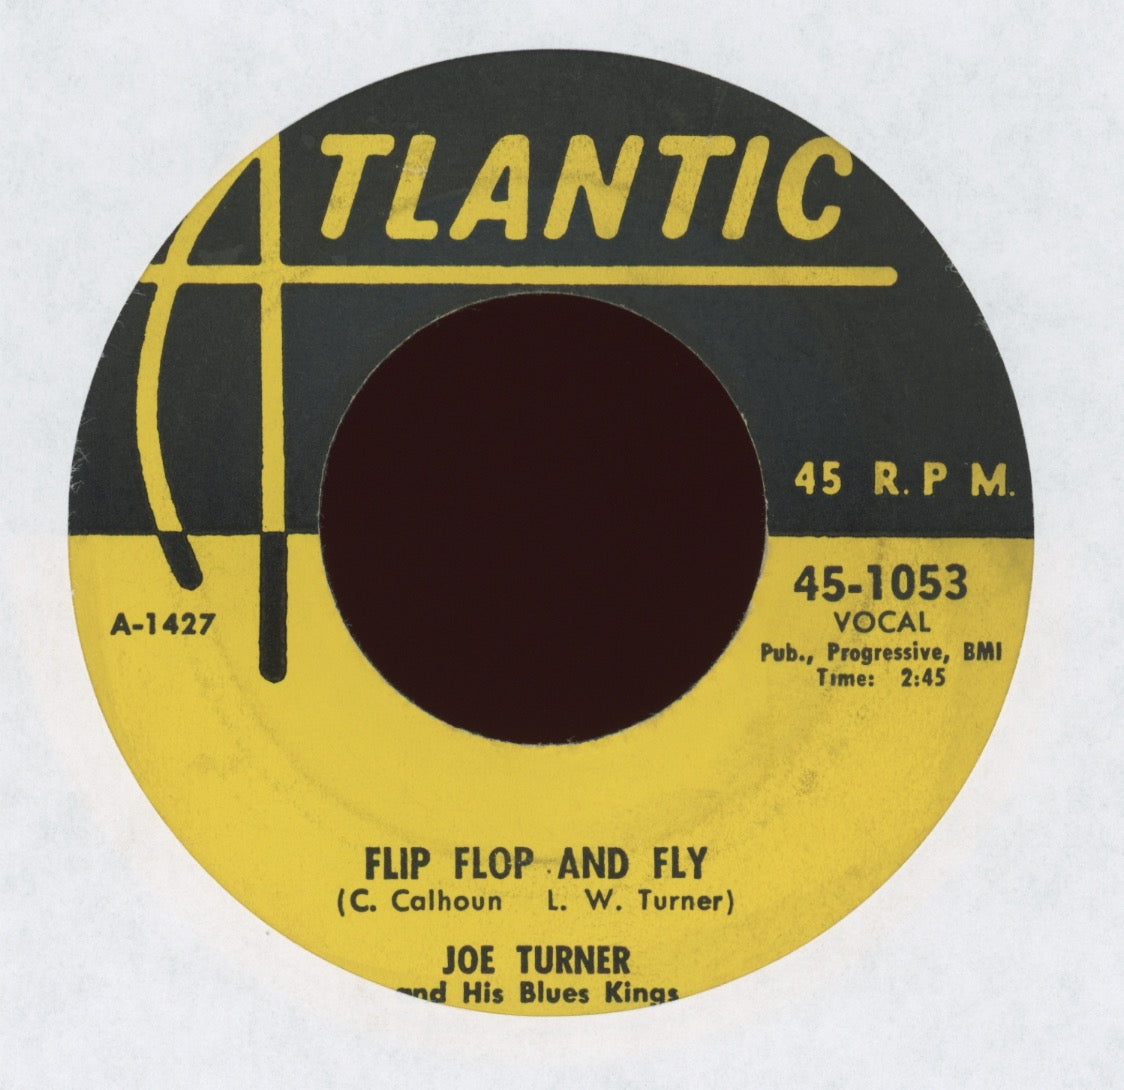 Joe Turner & His Blues Kings - Flip Flop And Fly on Atlantic